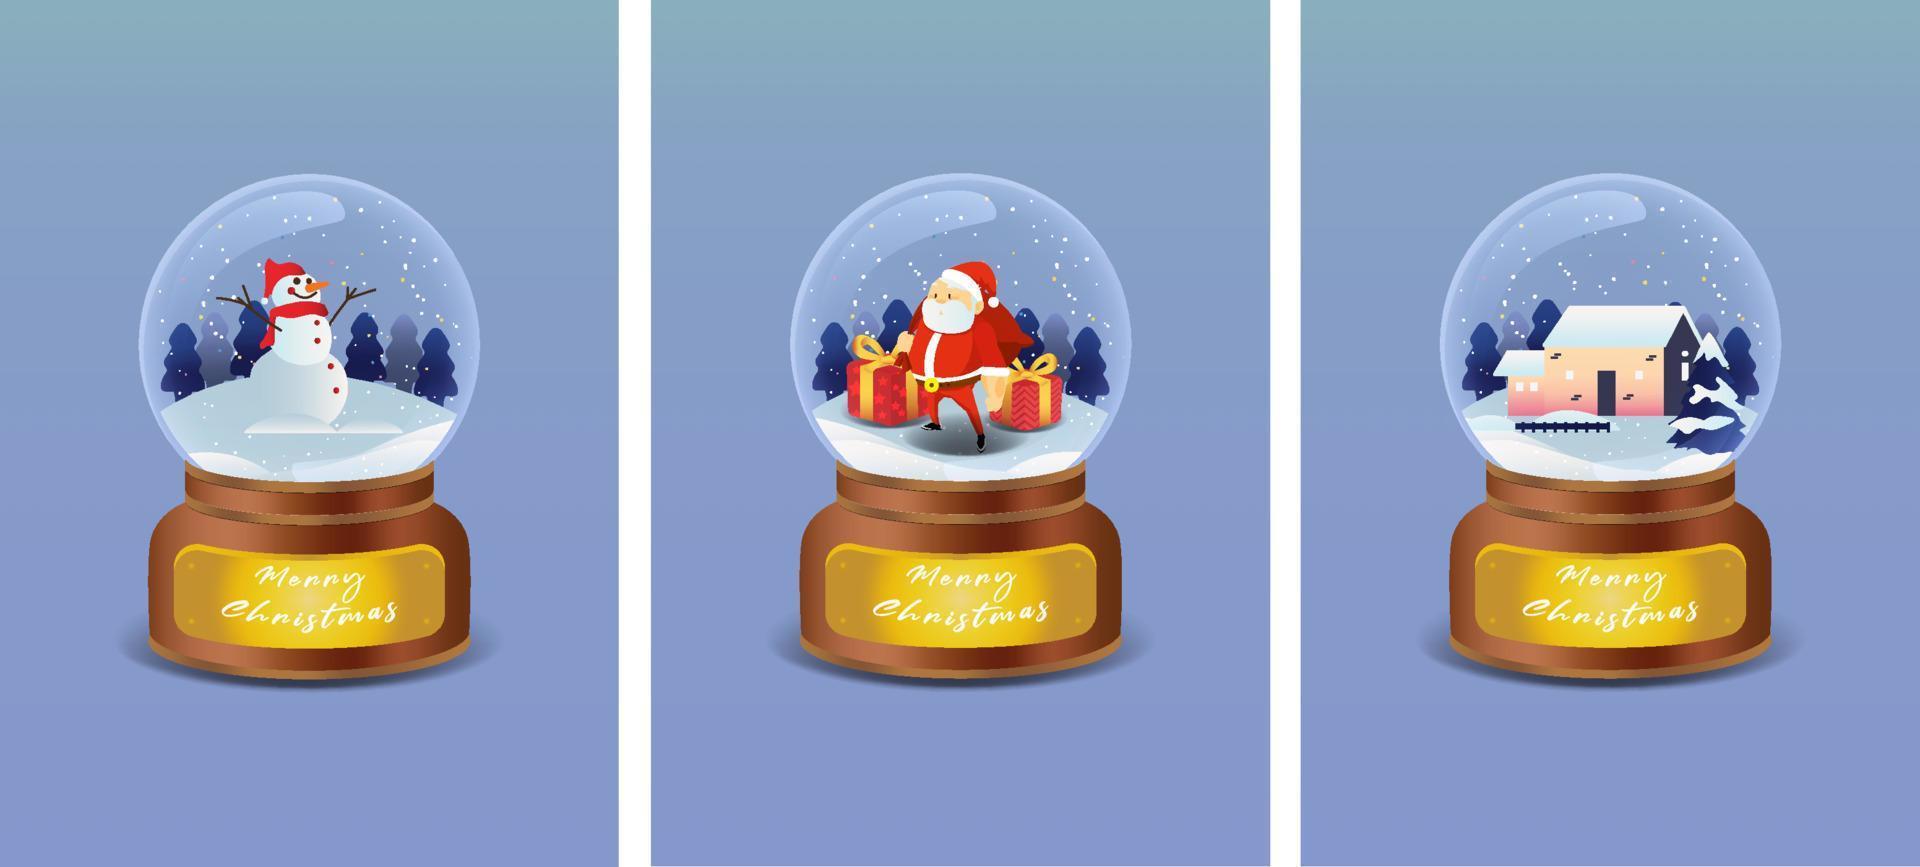 kristall boll med snögubbe, santa claus, och hus i vinter- landskap. vektor illustration